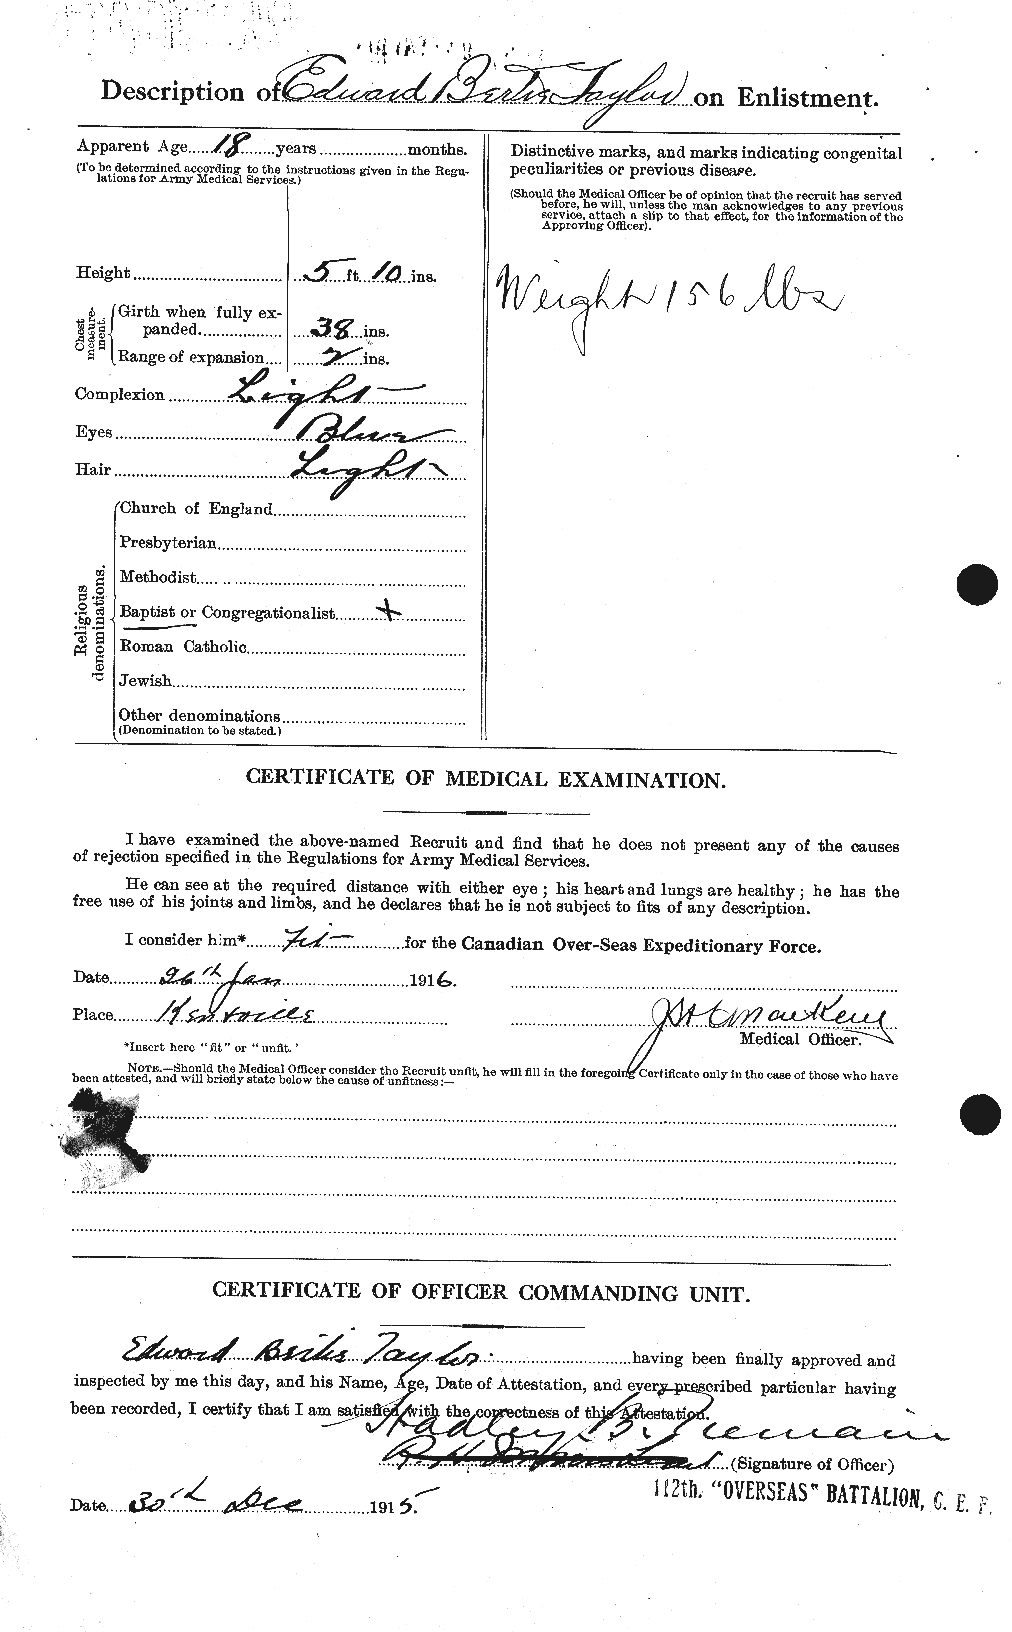 Dossiers du Personnel de la Première Guerre mondiale - CEC 627302b